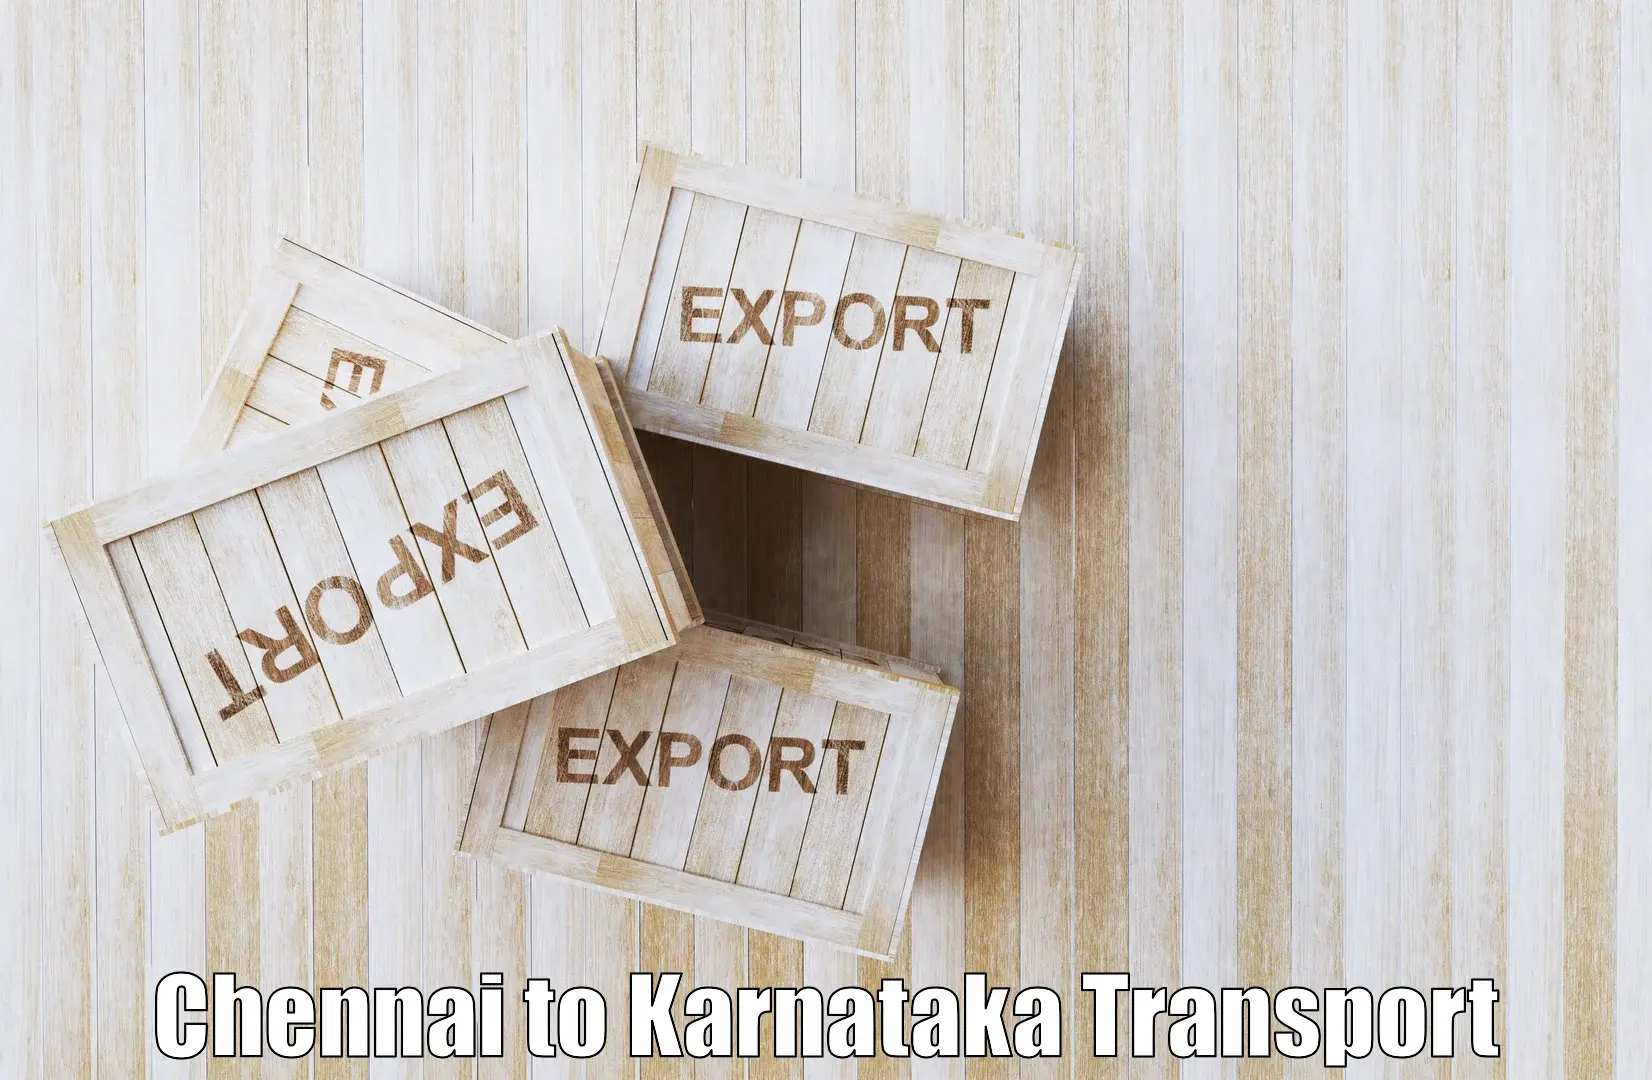 Scooty transport charges Chennai to Dakshina Kannada